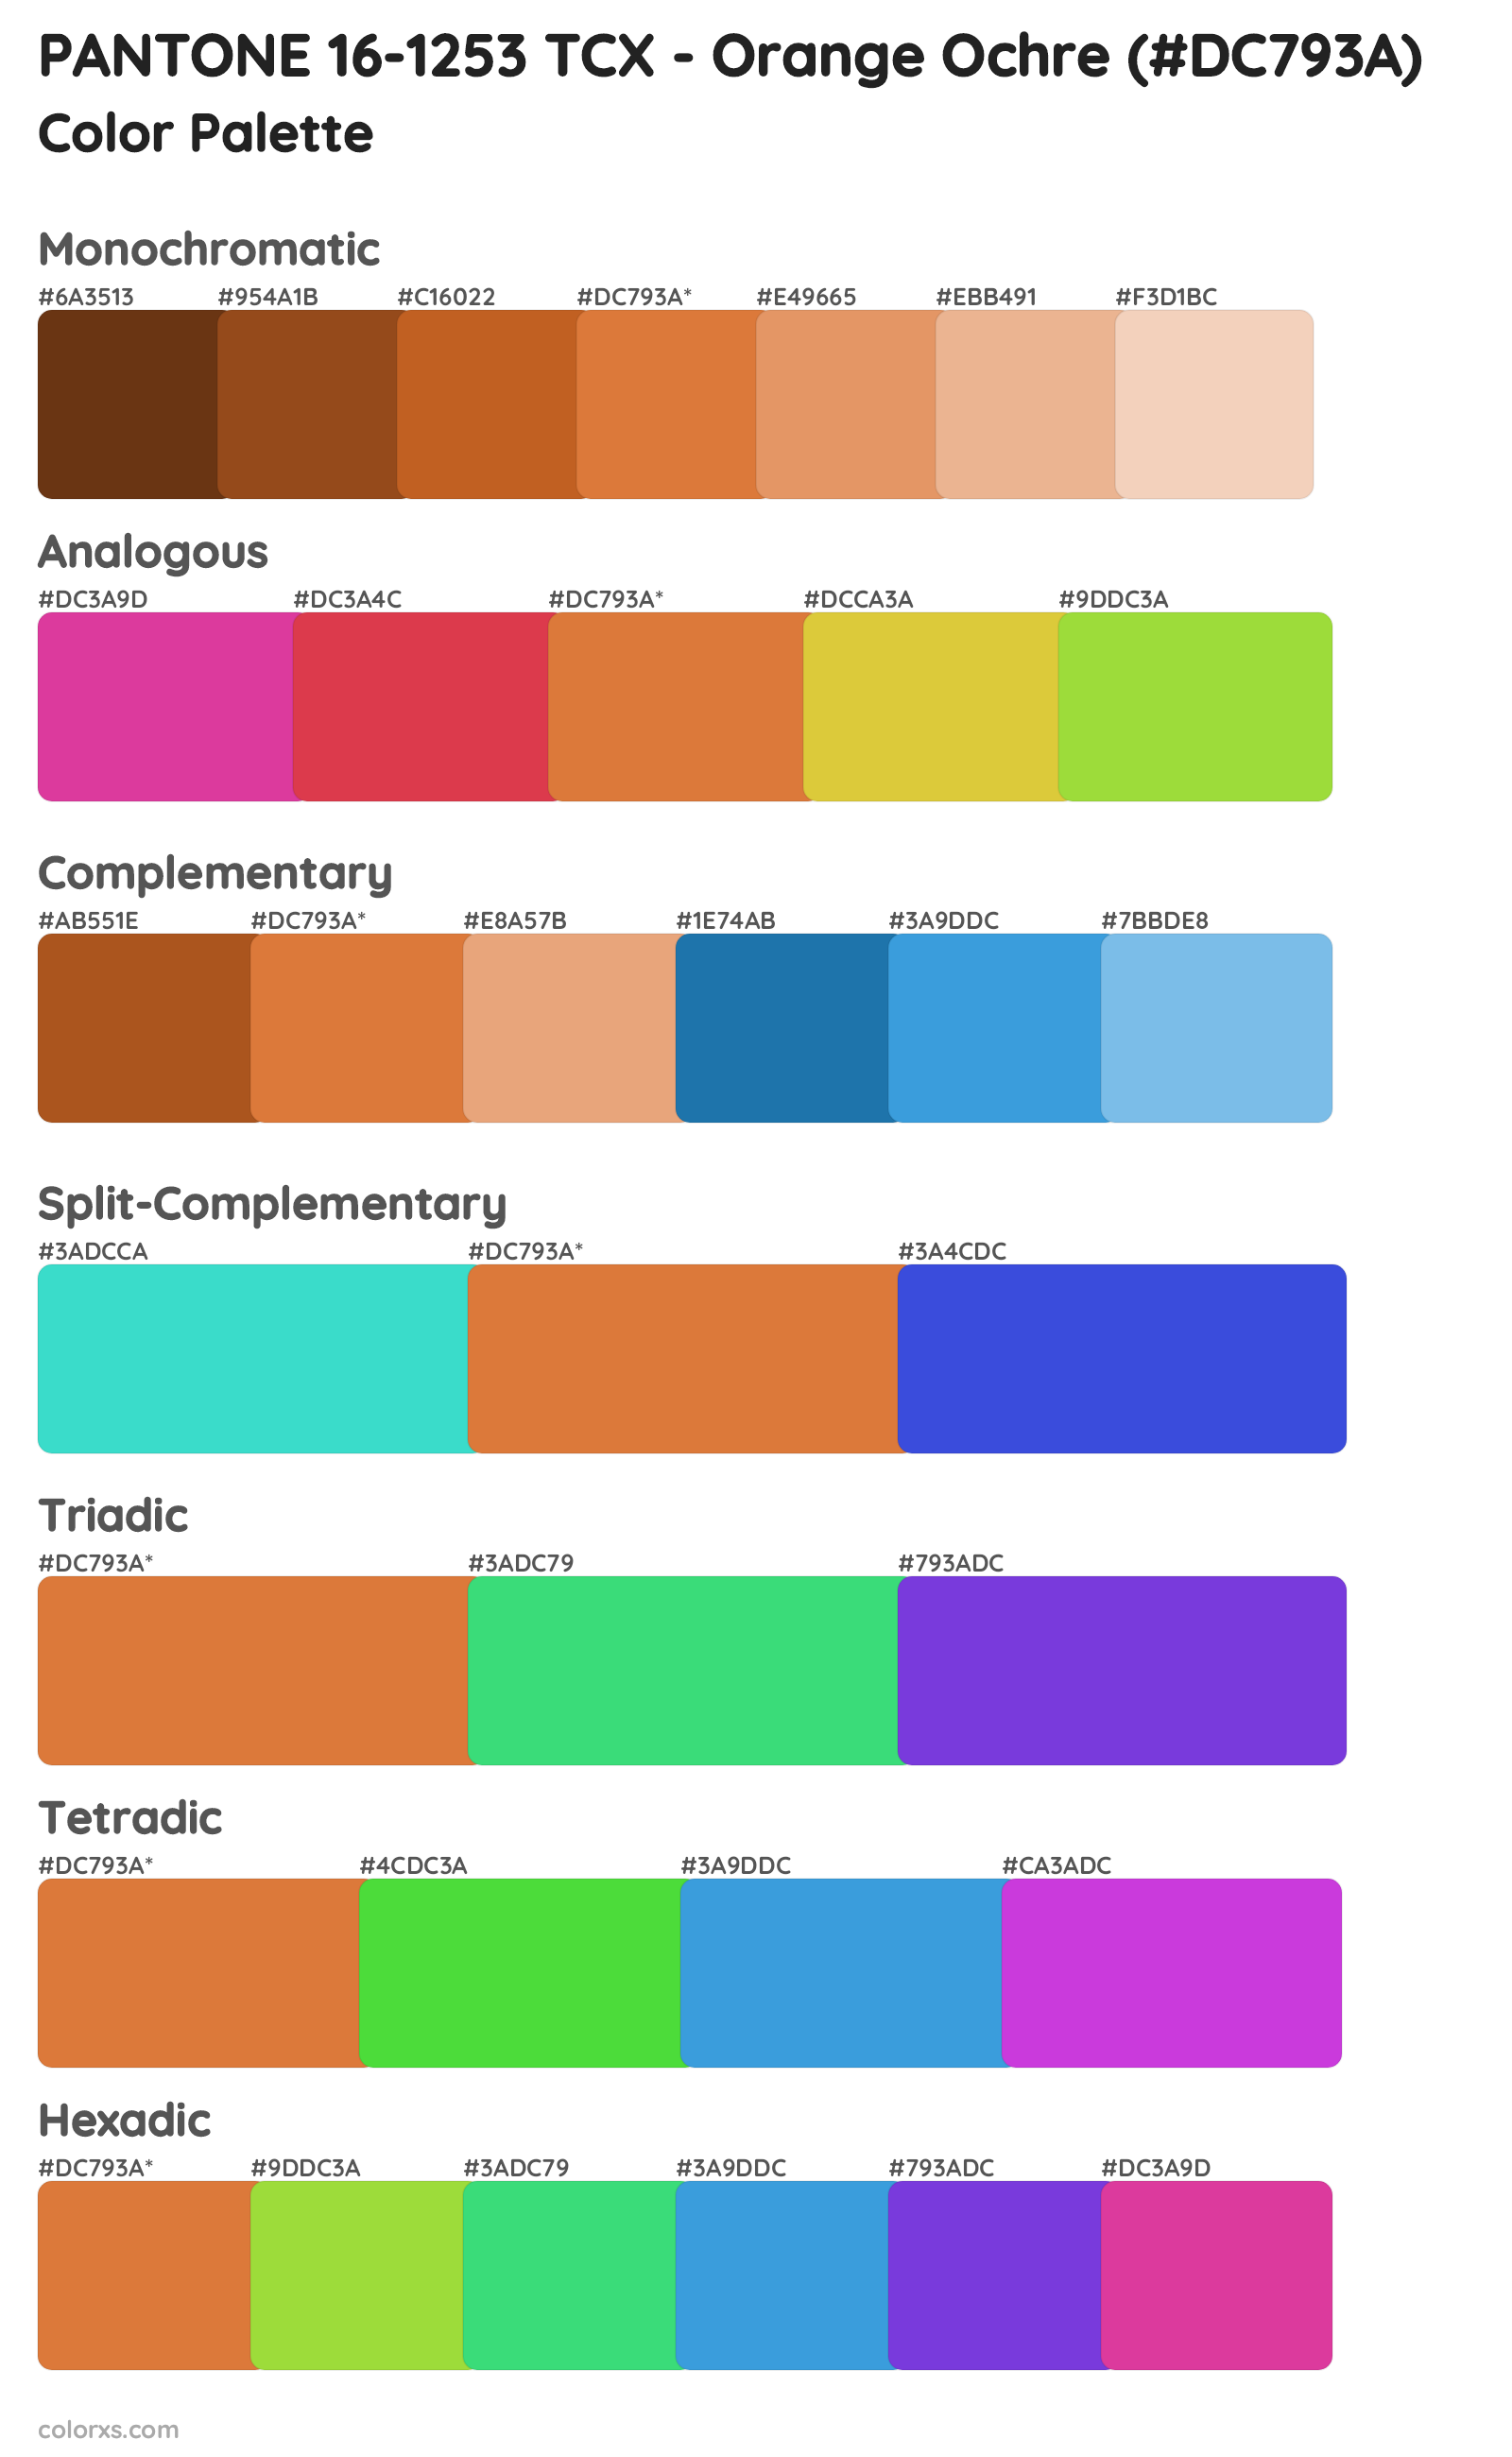 PANTONE 16-1253 TCX - Orange Ochre Color Scheme Palettes